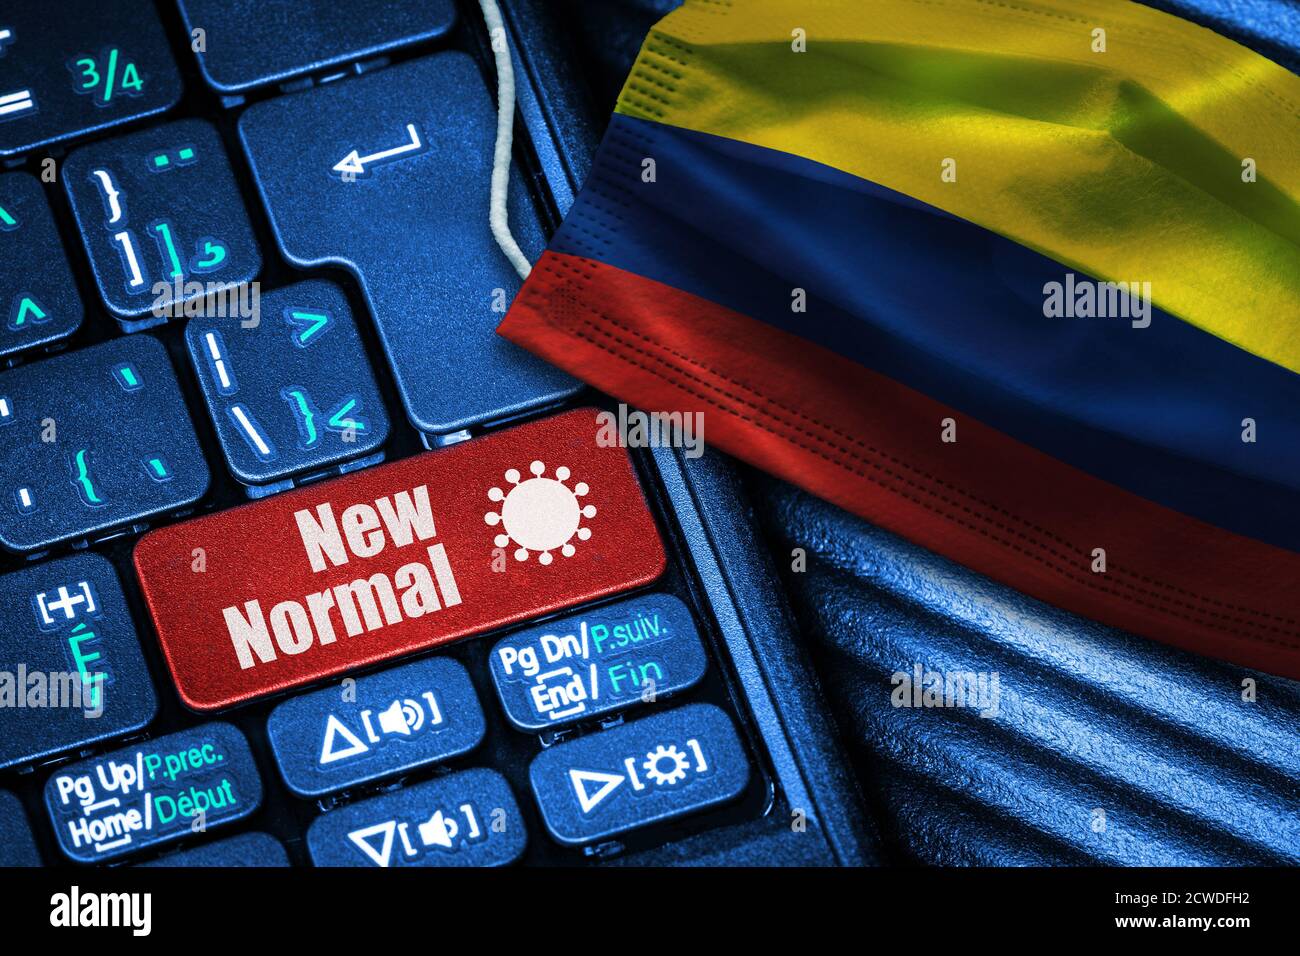 Concept de la nouvelle normale en Colombie pendant Covid-19 avec clavier d'ordinateur rouge bouton texte et masque de visage montrant drapeau colombien. Banque D'Images